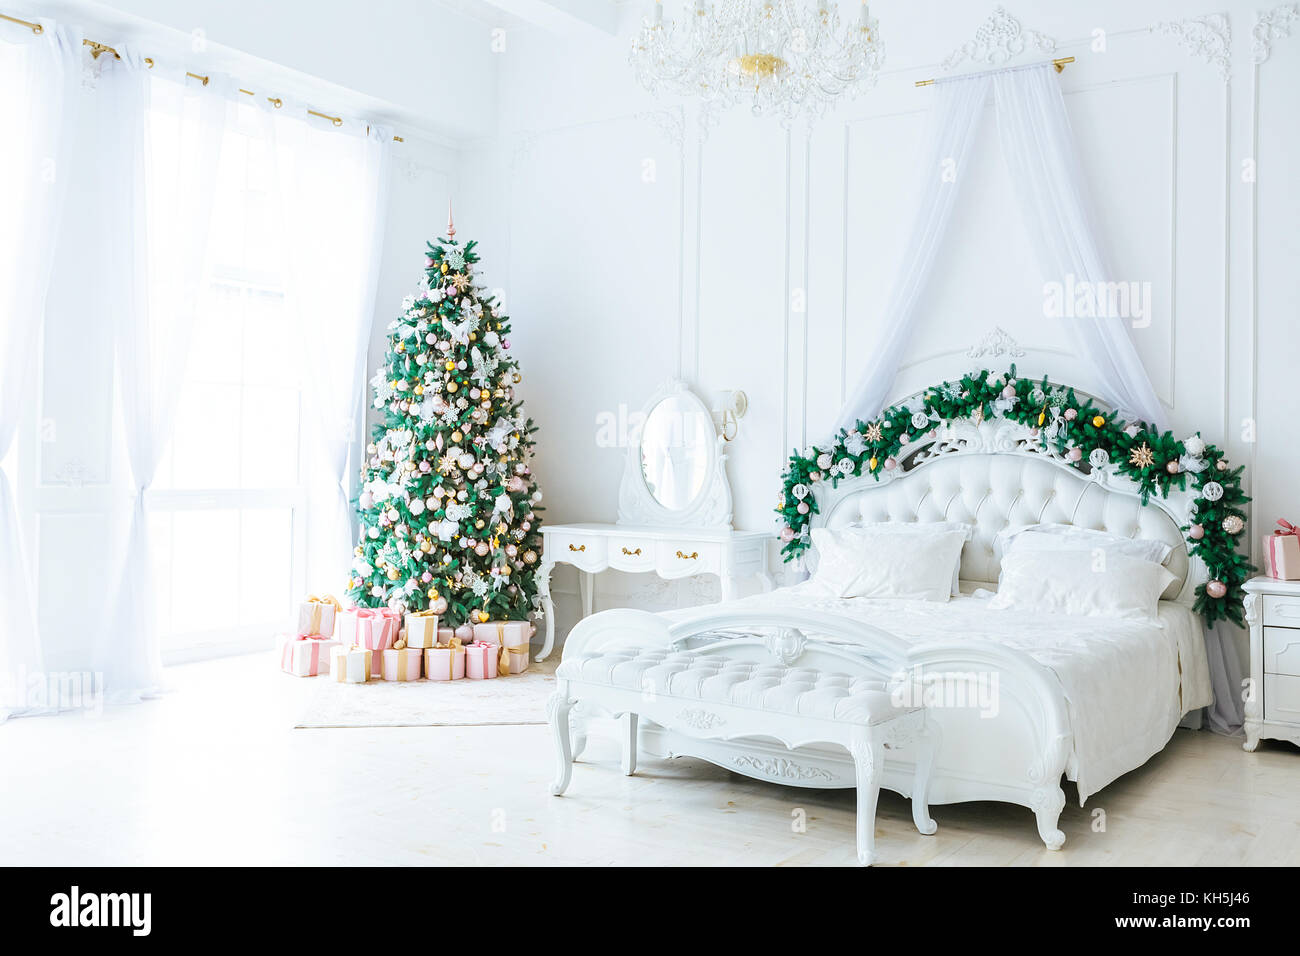 Weihnachten Wohnzimmer mit Weihnachten, Geschenke, Baum und Bett. Schönes neues Jahr eingerichtete Classic home Interieur. Winter Hintergrund Stockfoto